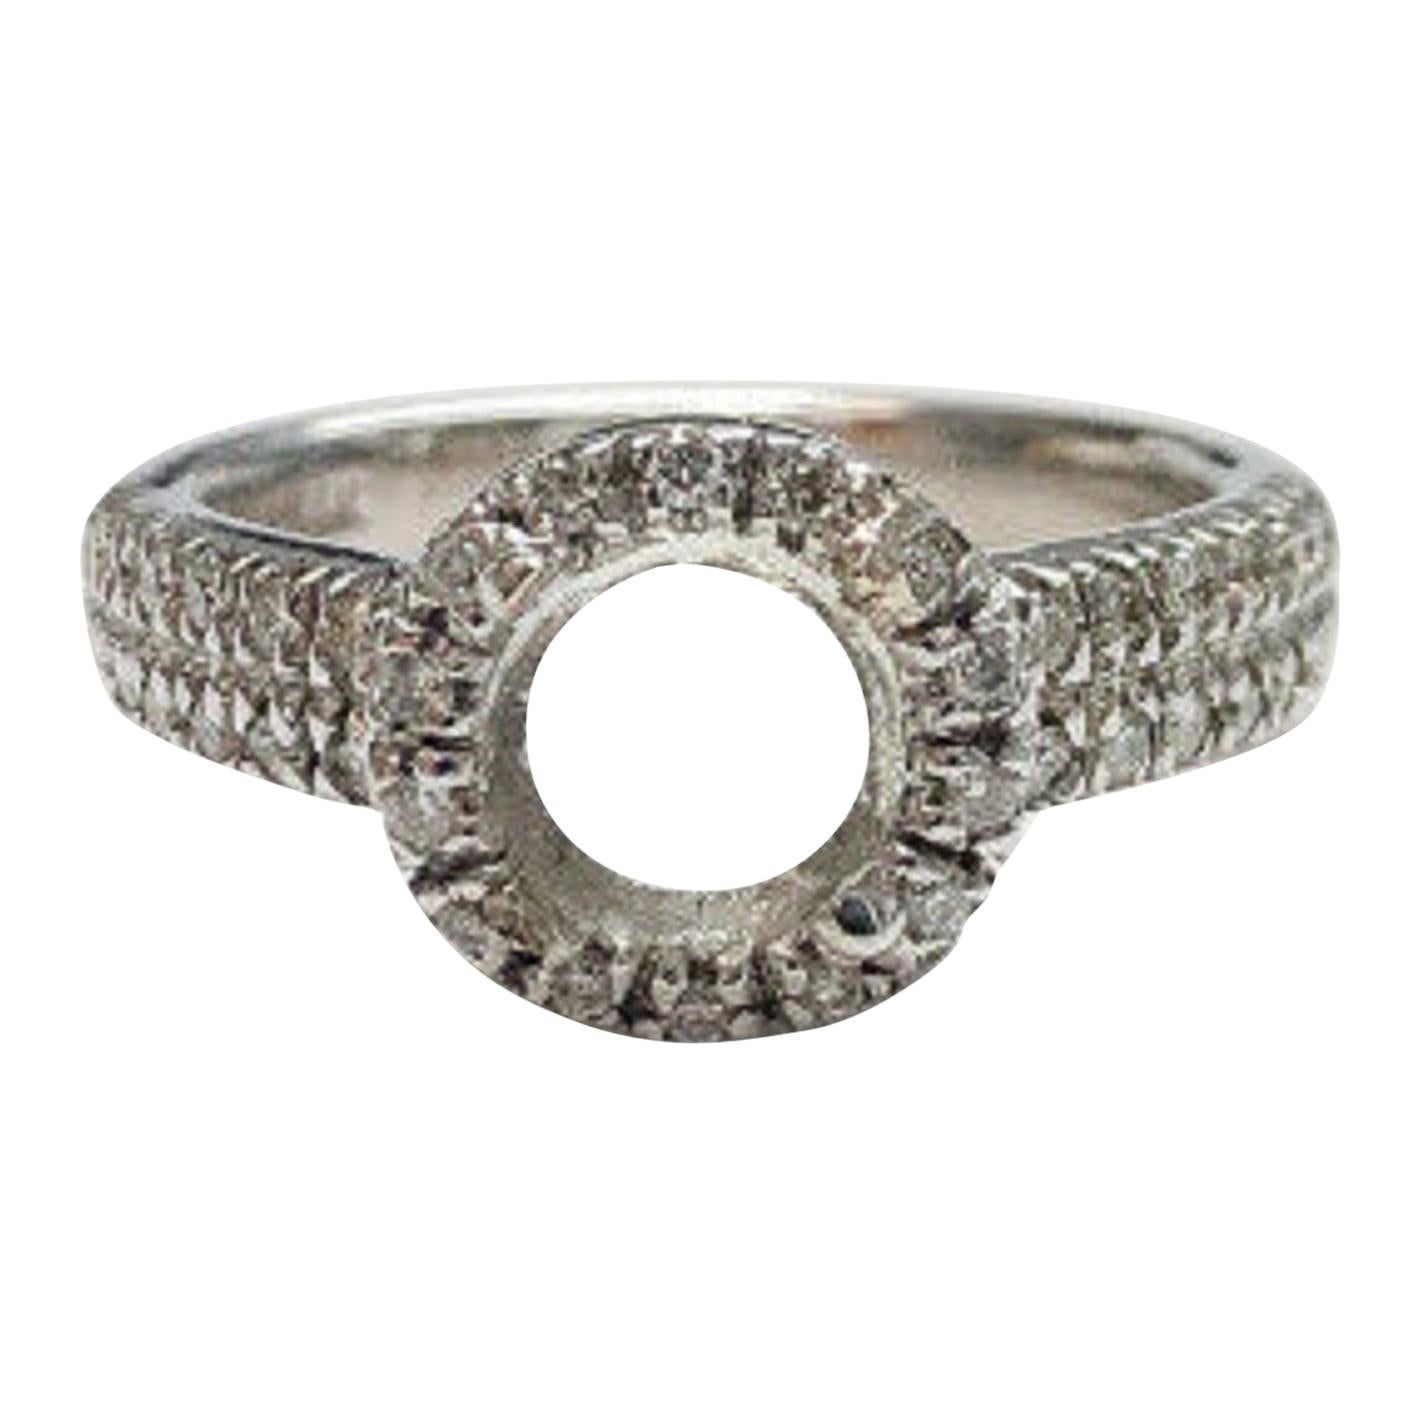 14 Karat White Gold Diamond Halo Ring